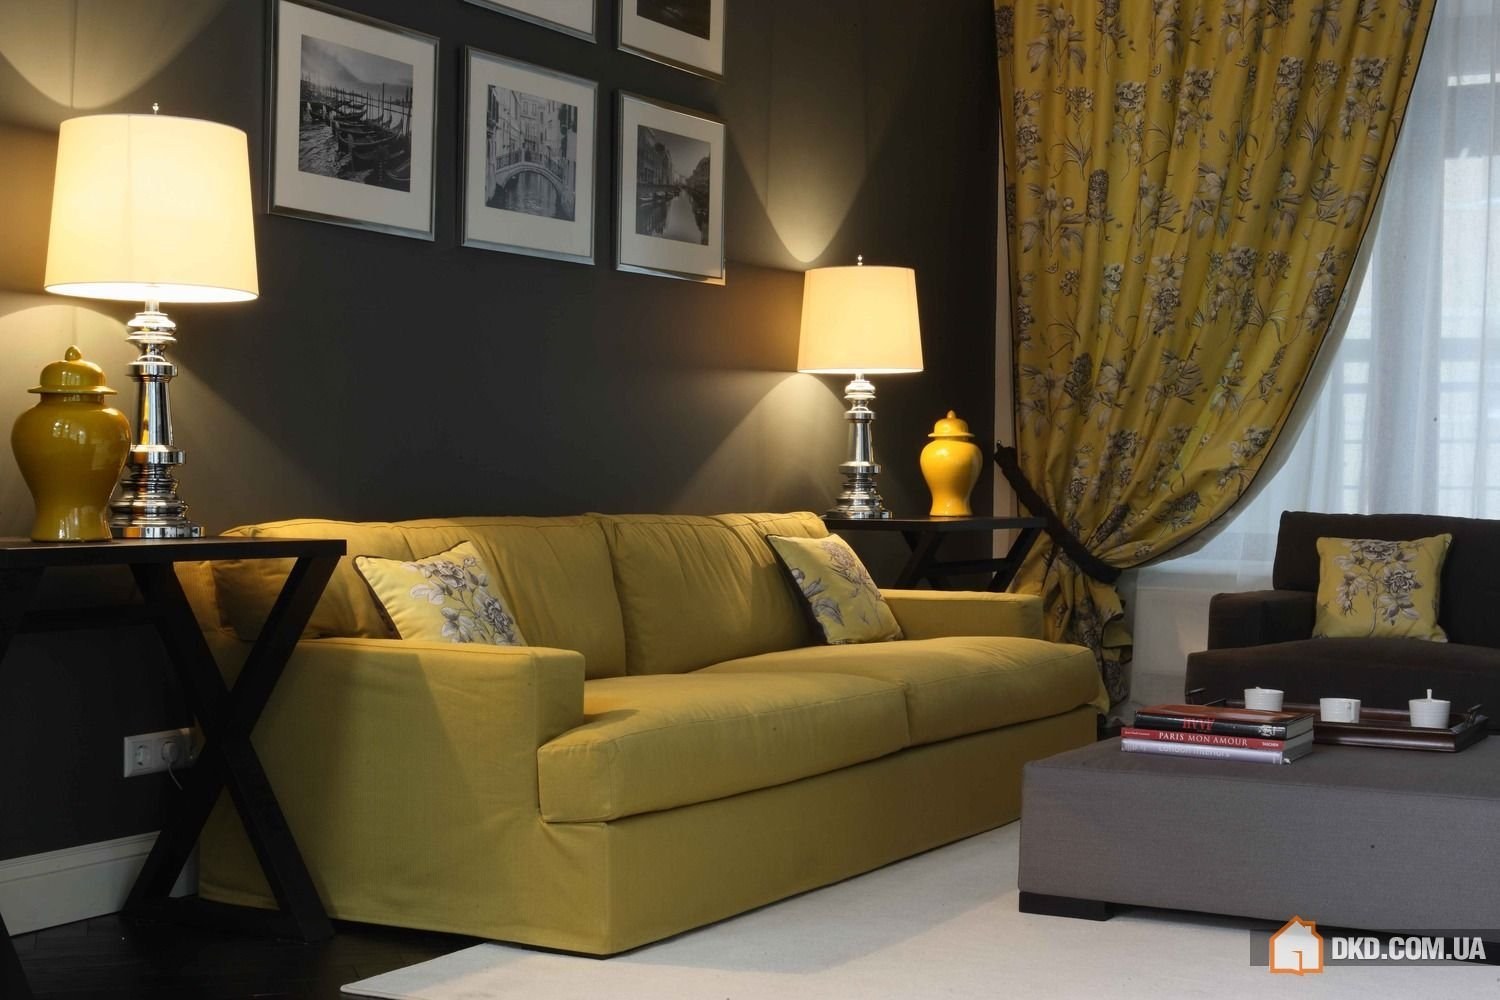 Горчичный цвет сочетание цветов в интерьере. Желтый диван в интерьере. Желтый в интерьере гостиной. Интерьер в горчичных тонах. Интерьер в желтых тонах.